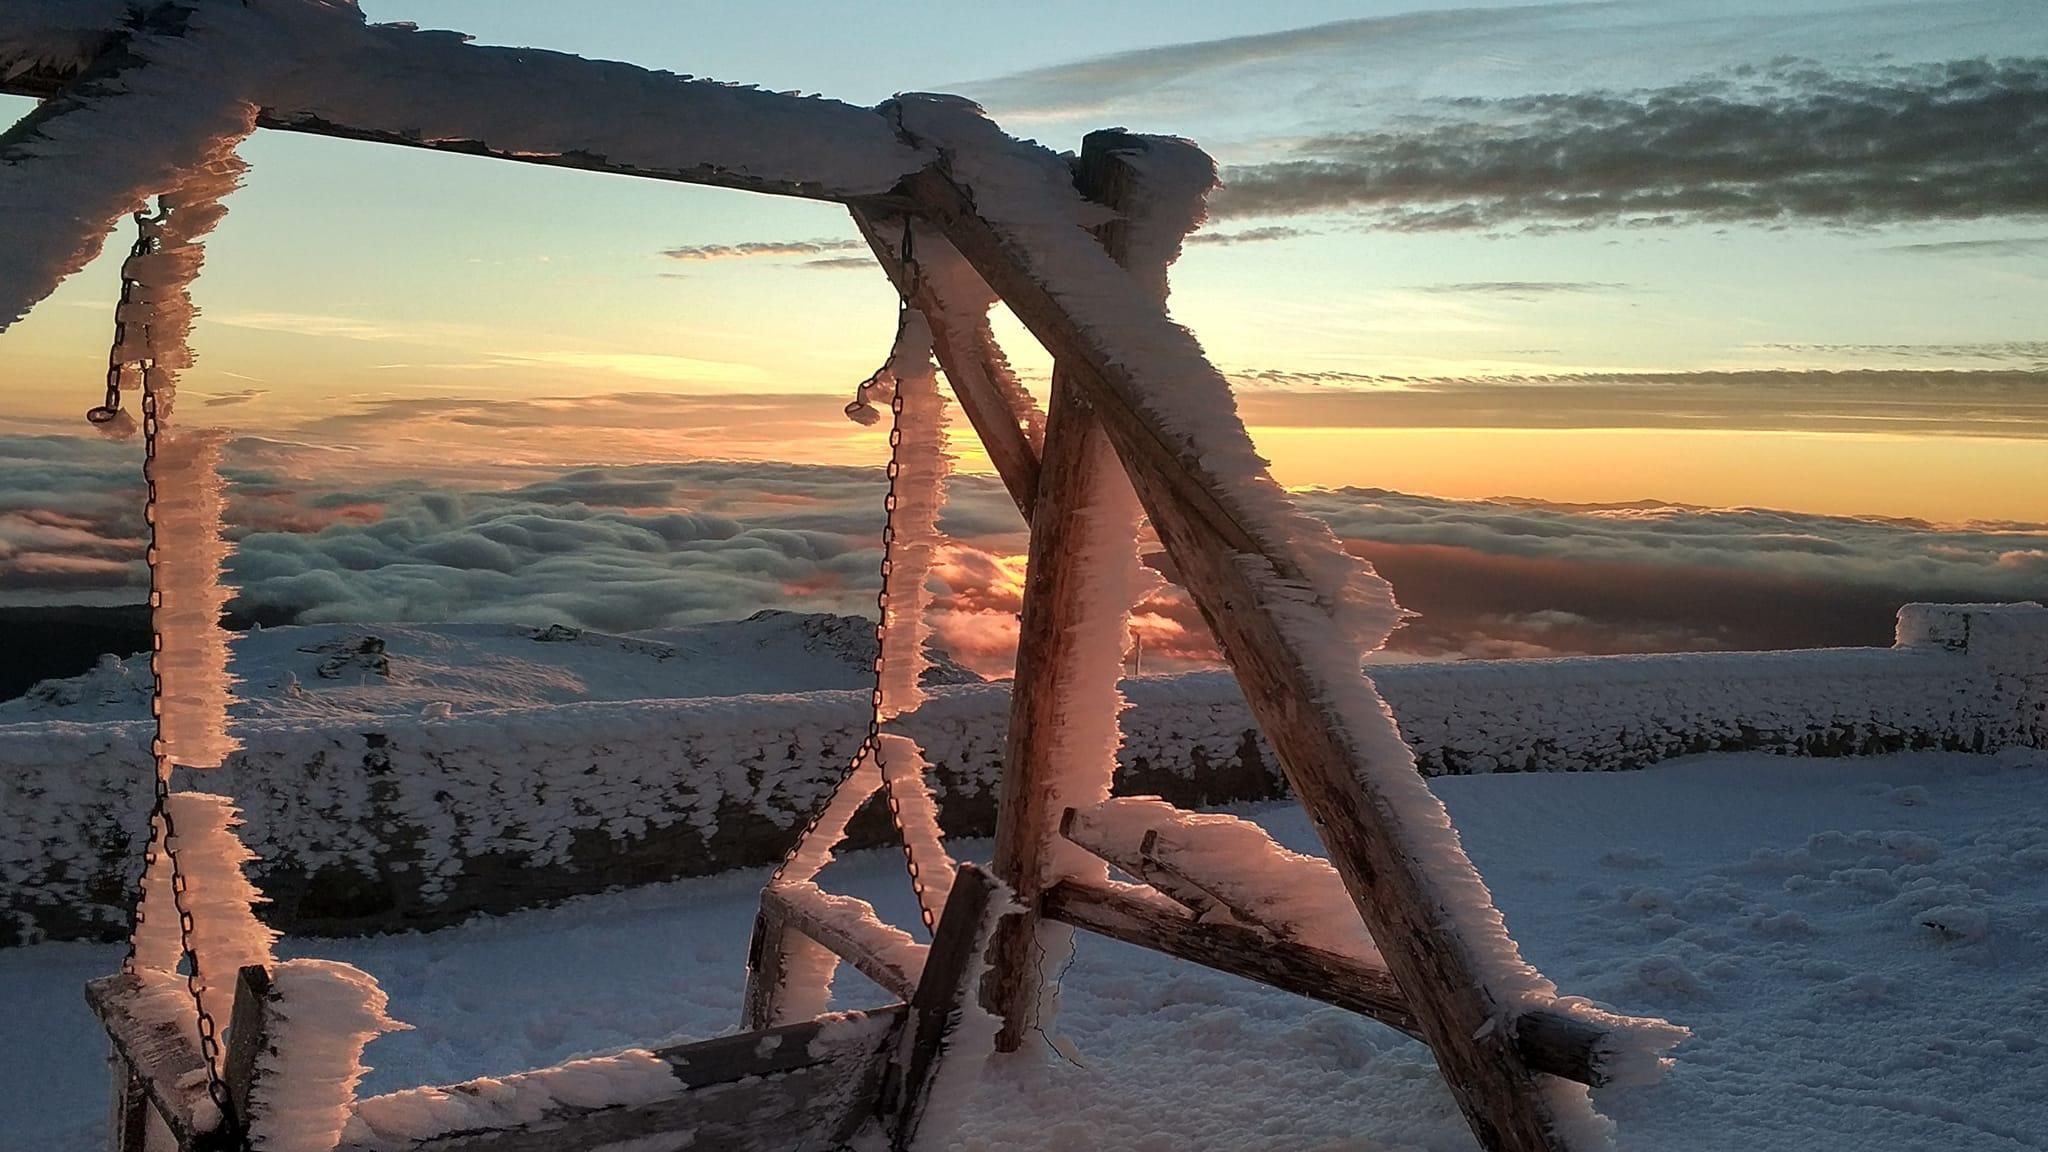 Облака накрыли заснеженные горы: захватывающее фото морозного утра на вершине Карпат